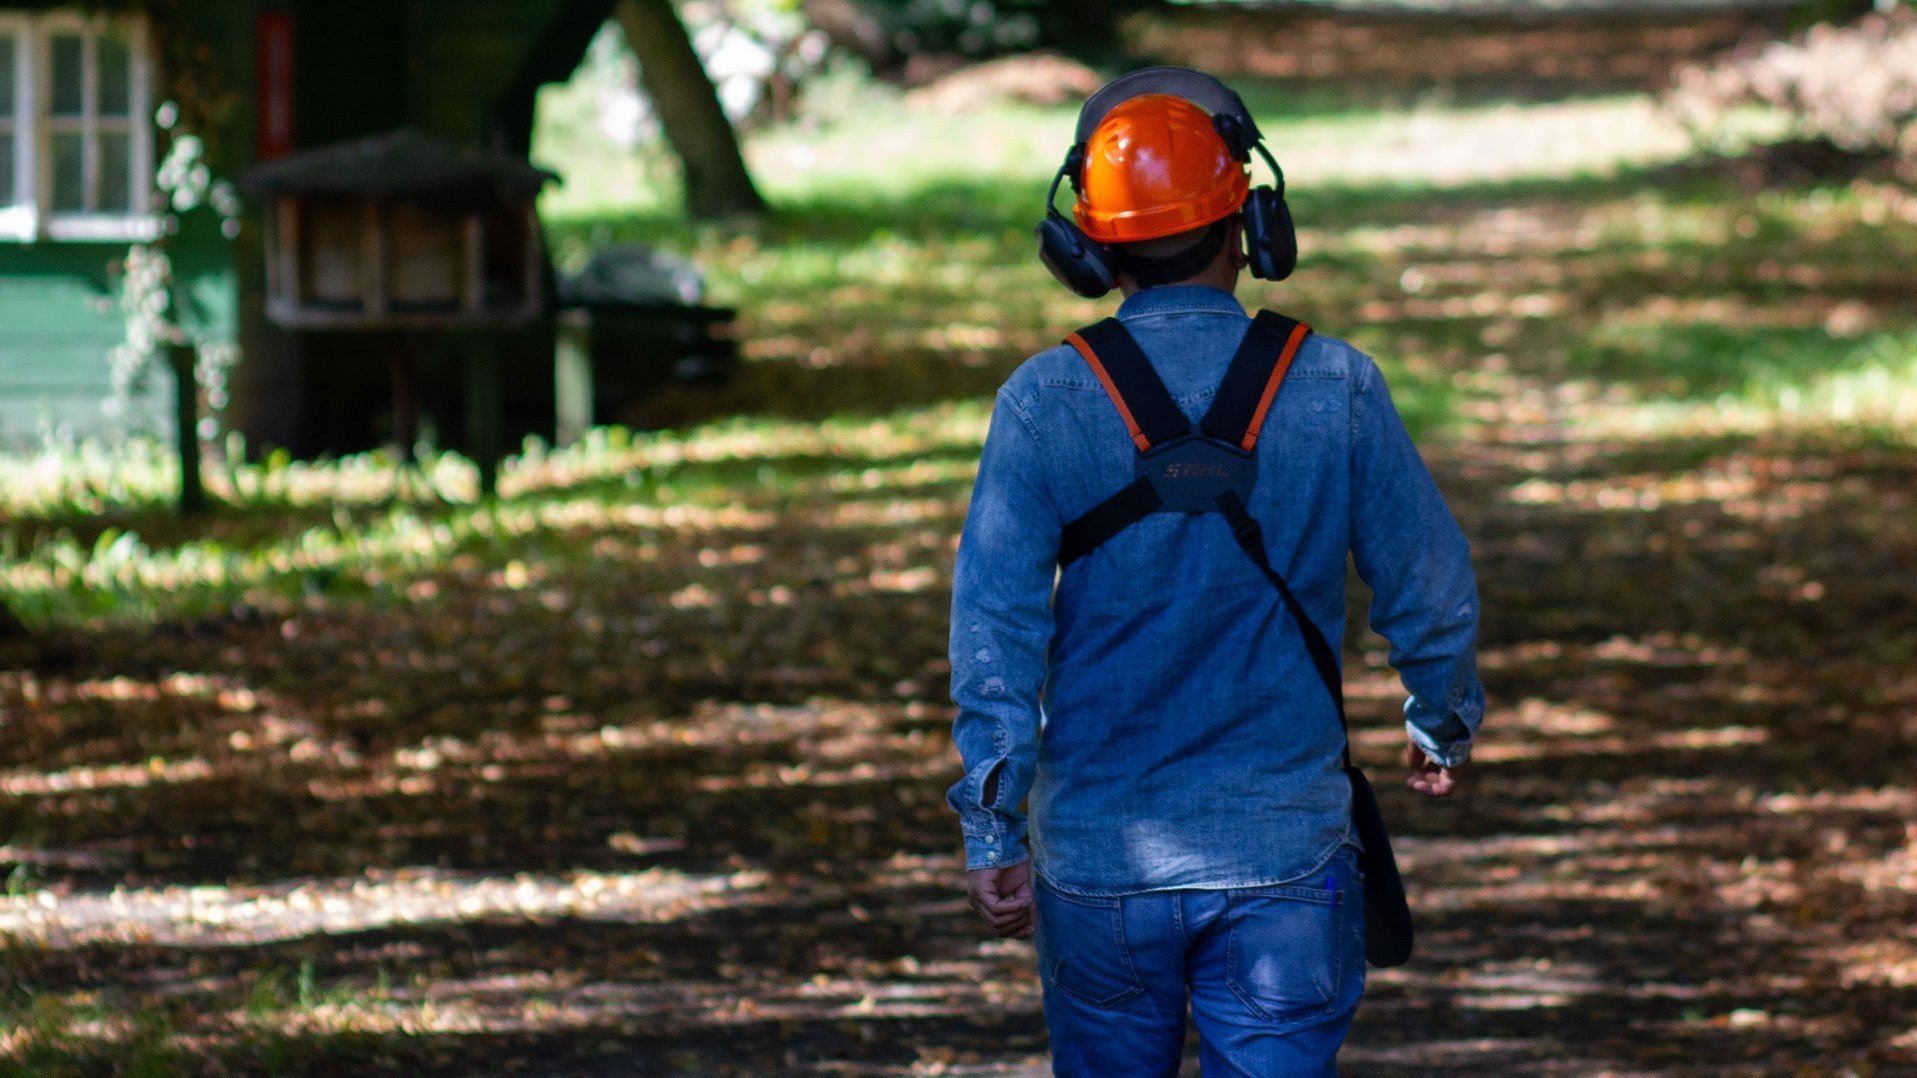 Gartenarbeit: ein Mann mit Arbeitssicherheits-Ausrüstung und orangem Helm geht durch den Garten